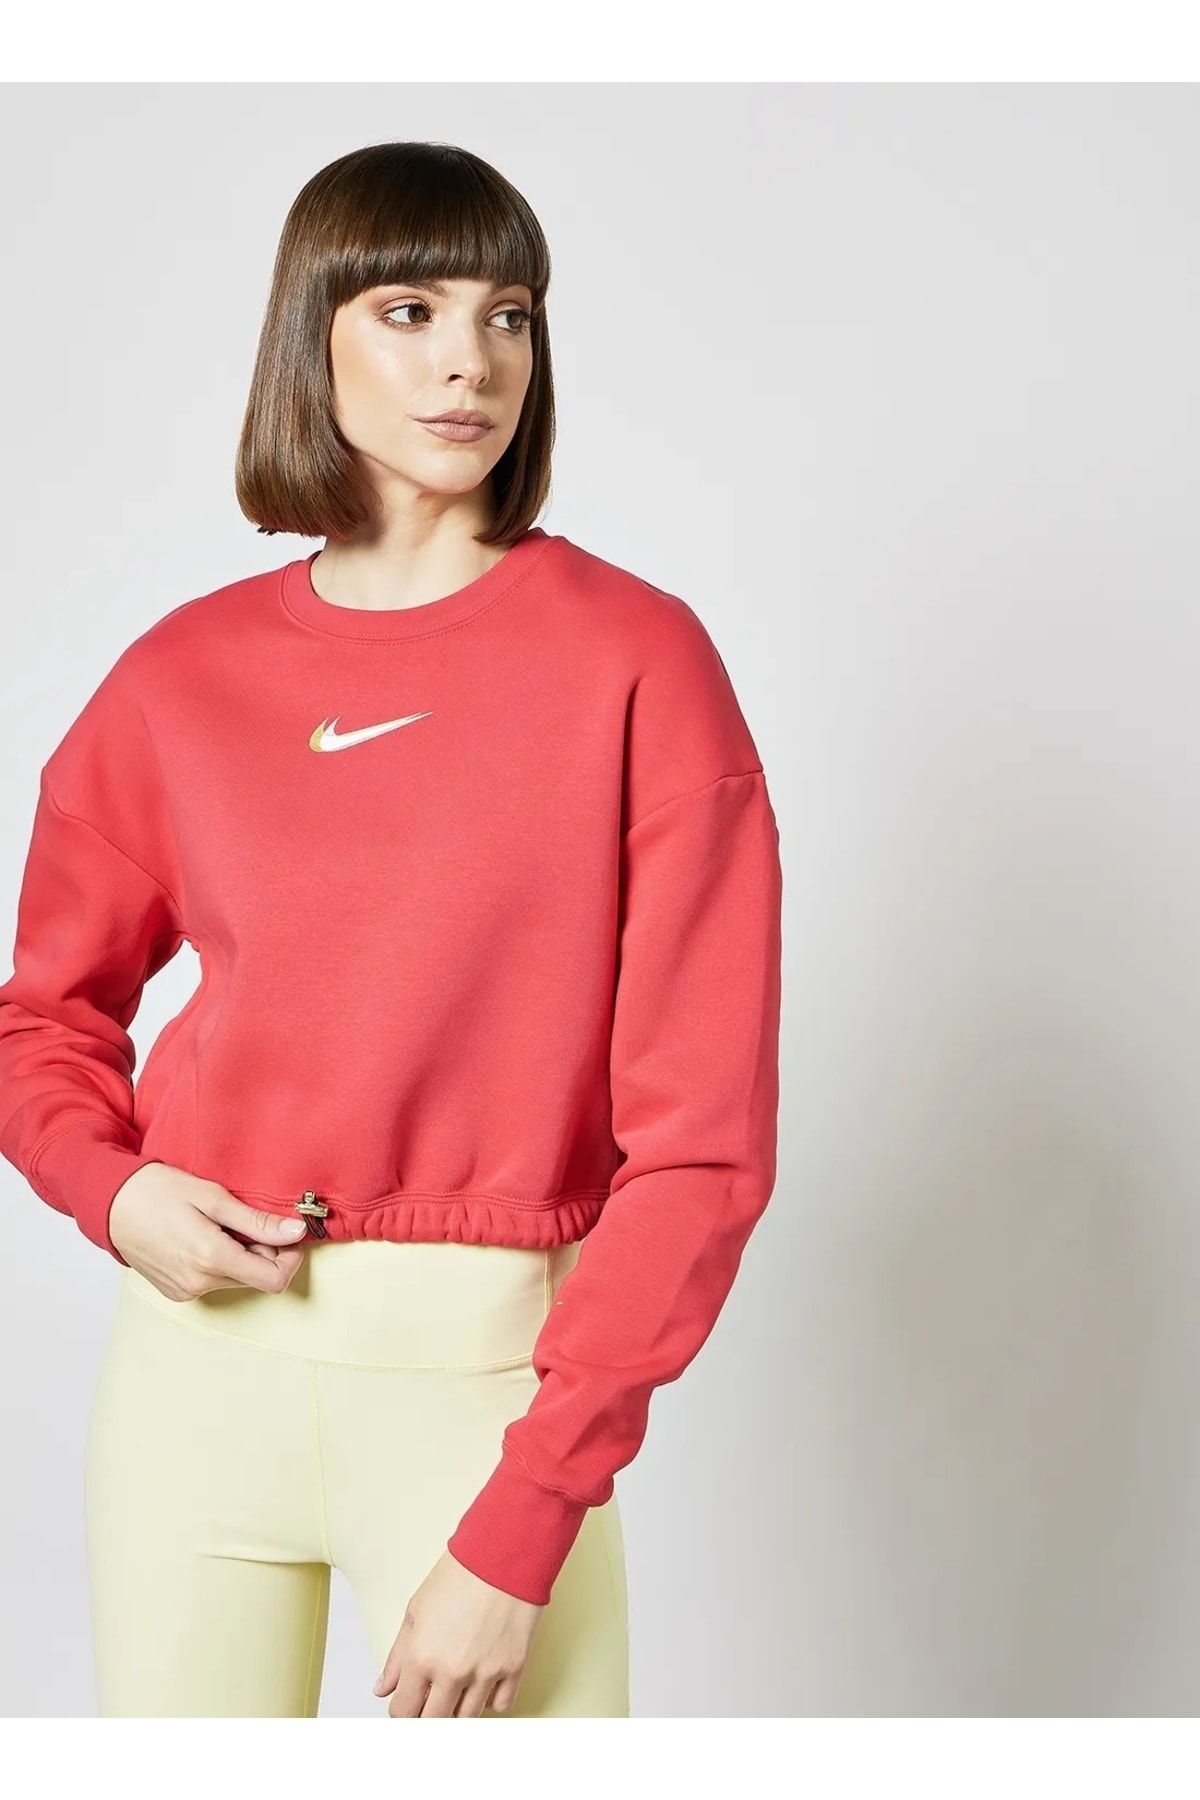 Nike Sportswear Fleece Dance Kadın Sweatshirt